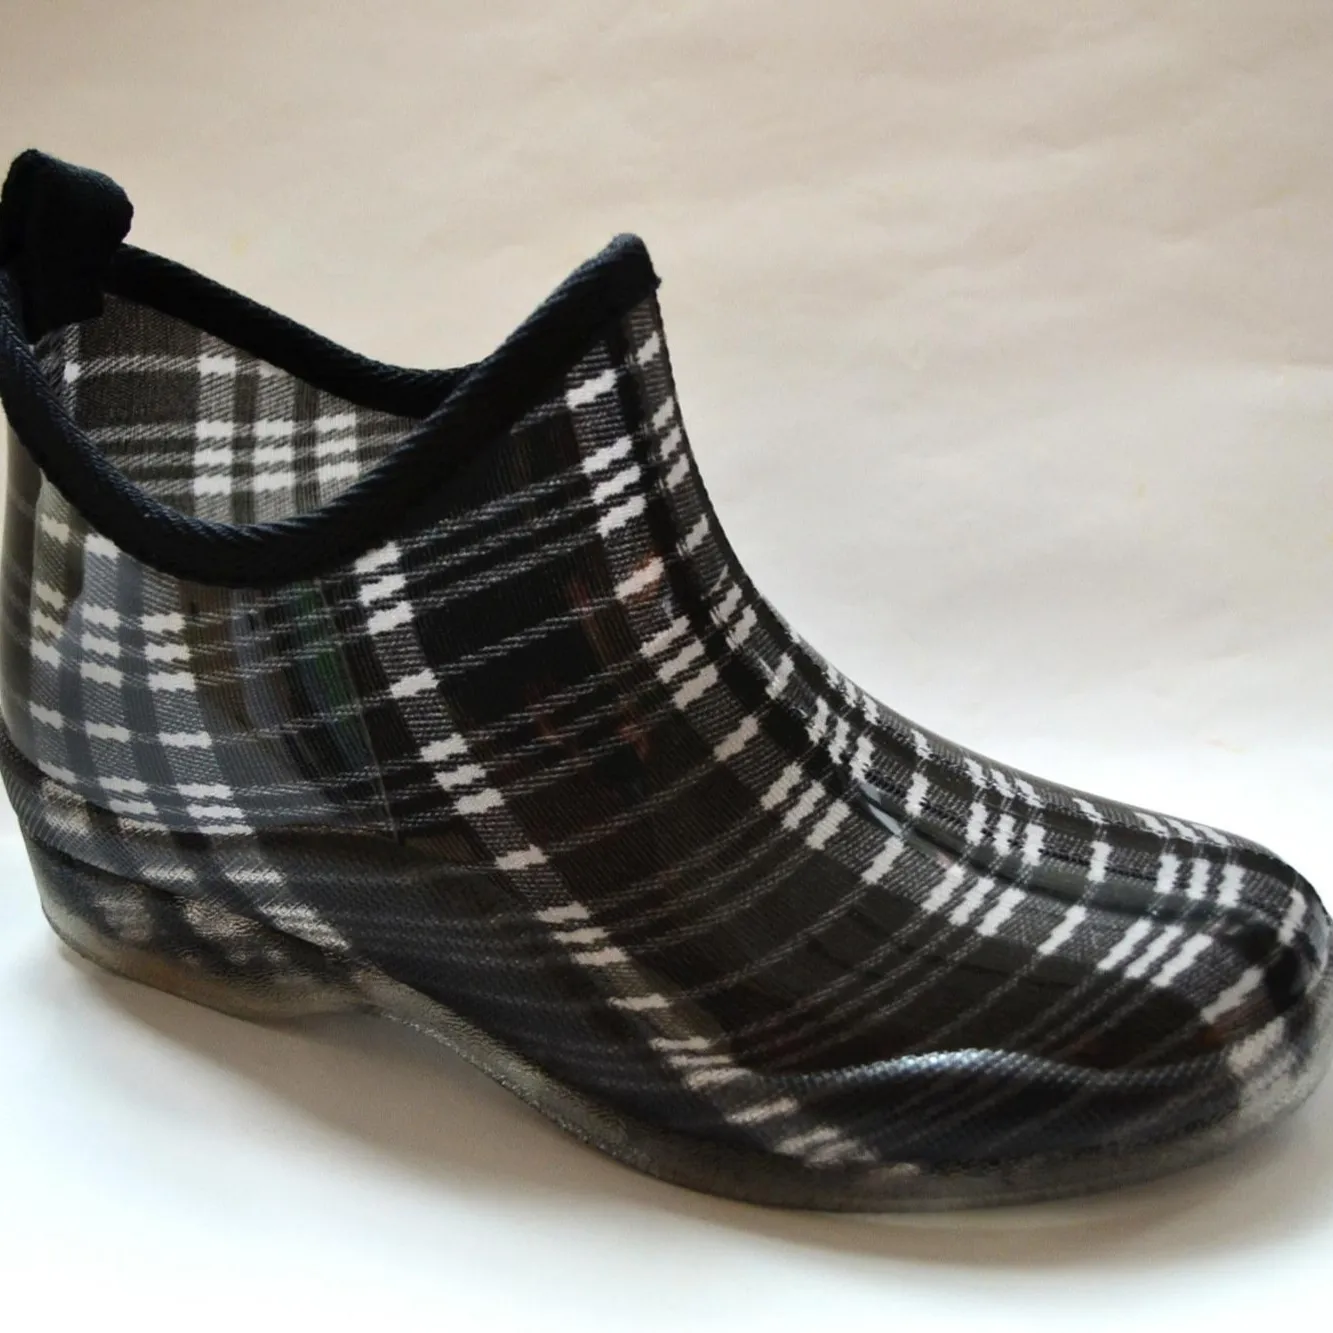 Wholesale Short Gumboot Waterproof PVC Antislip Women Ankle Rain Shoes Chelsea Boots Ladies